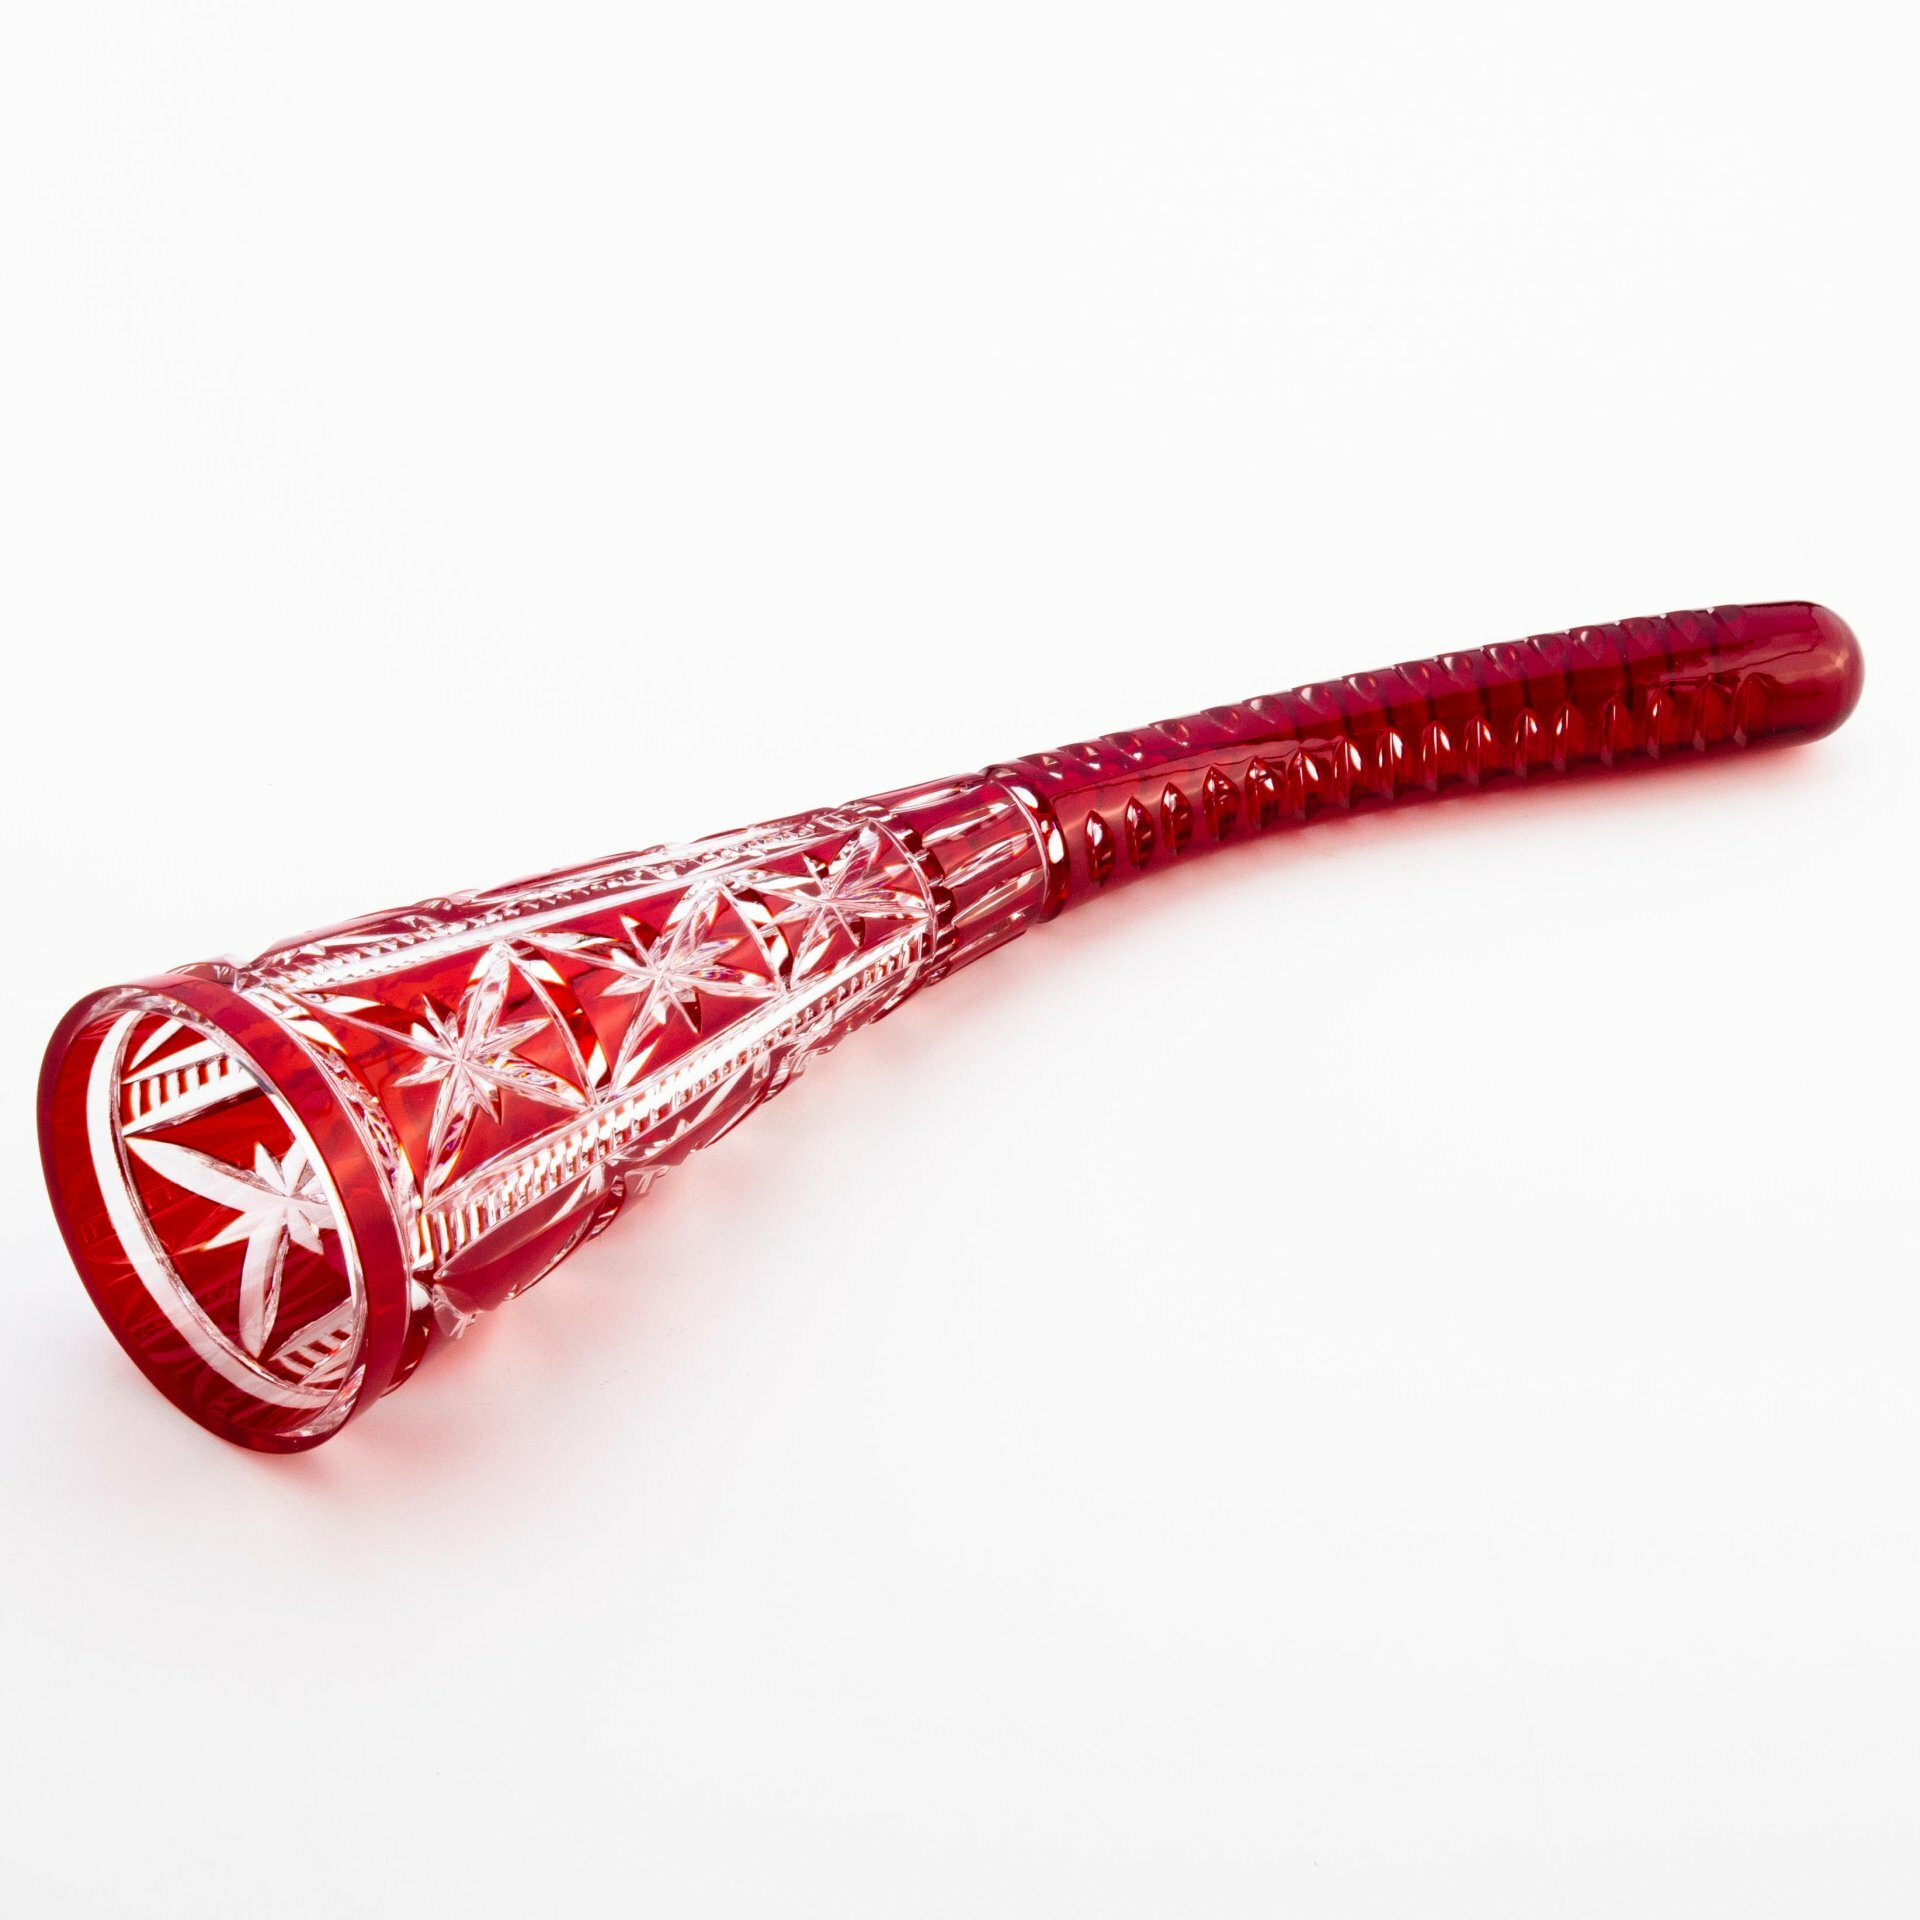 Кубок рубинового цвета в виде рога с резным декором, стекло, алмазная грань